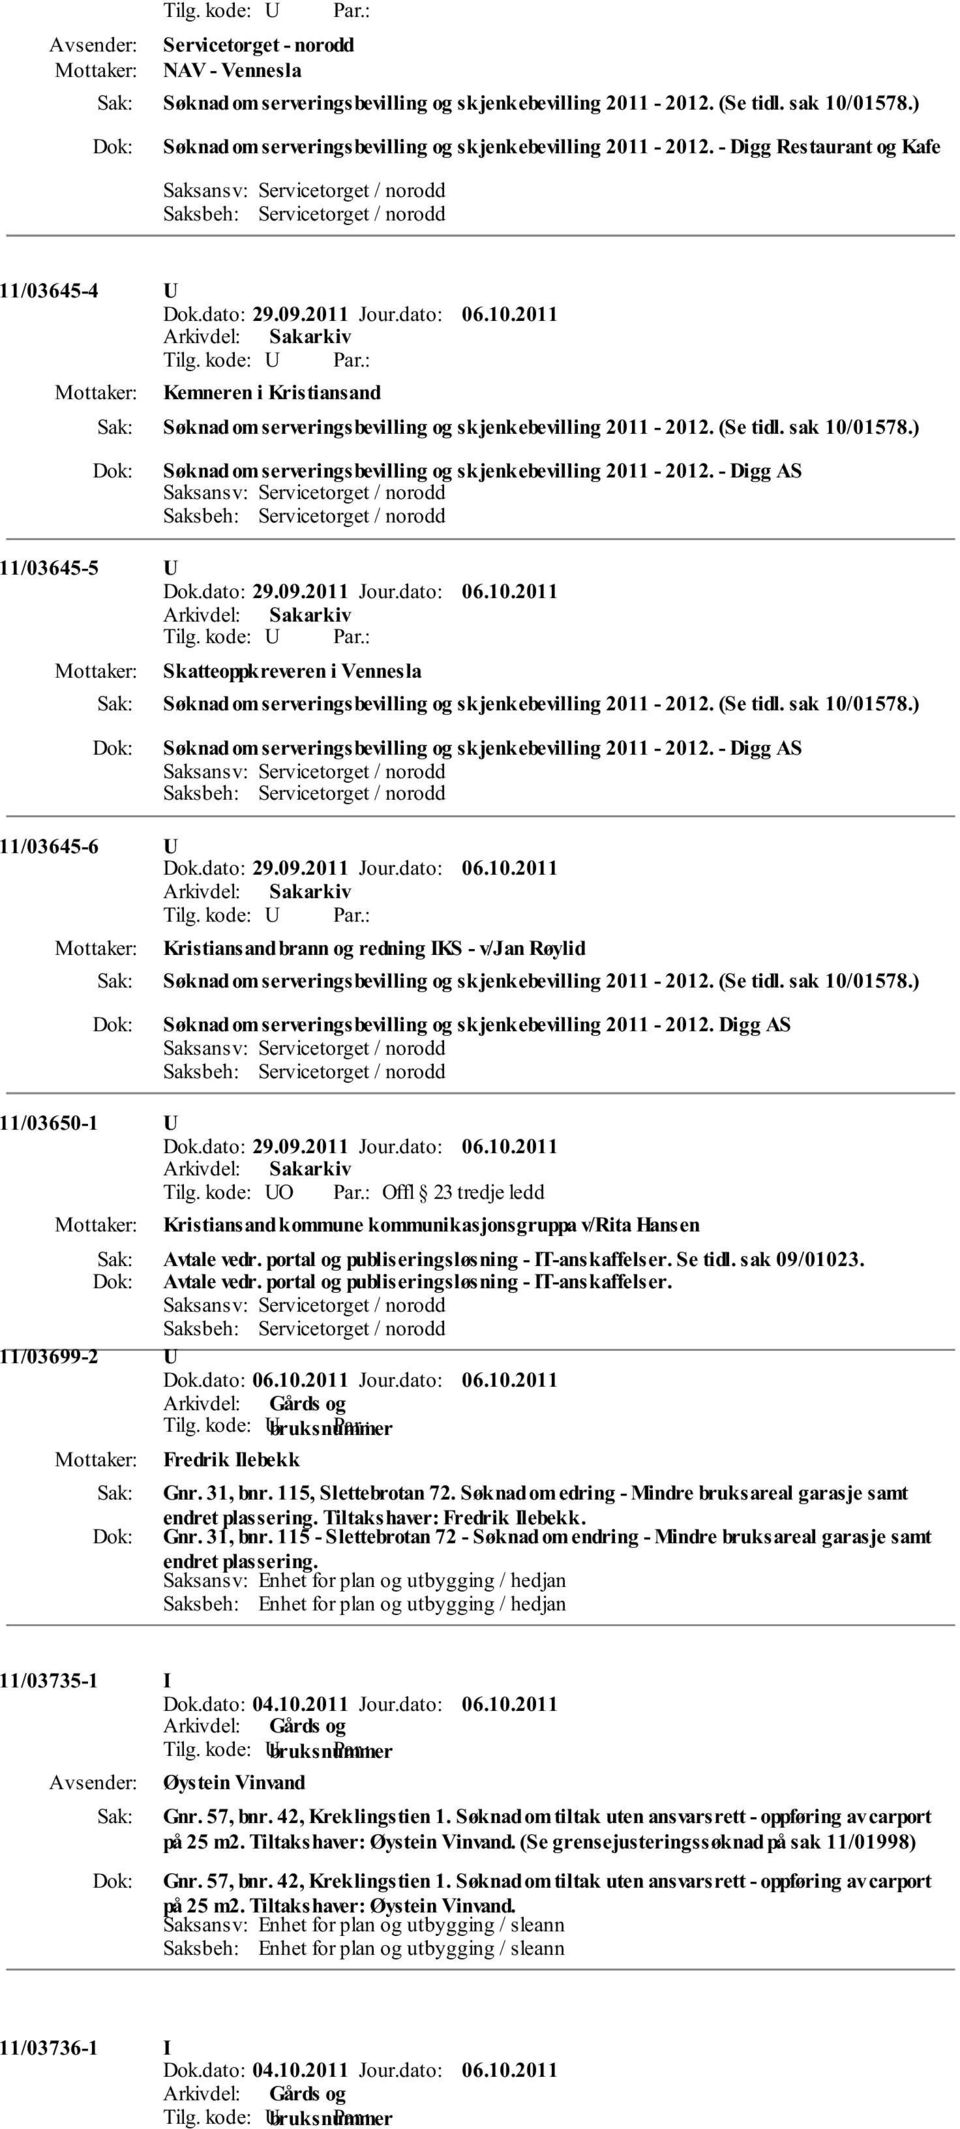 ) Søknad om serveringsbevilling og skjenkebevilling 2011-2012. - Digg AS 11/03645-5 U Skatteoppkreveren i Vennesla Søknad om serveringsbevilling og skjenkebevilling 2011-2012. (Se tidl. sak 10/01578.